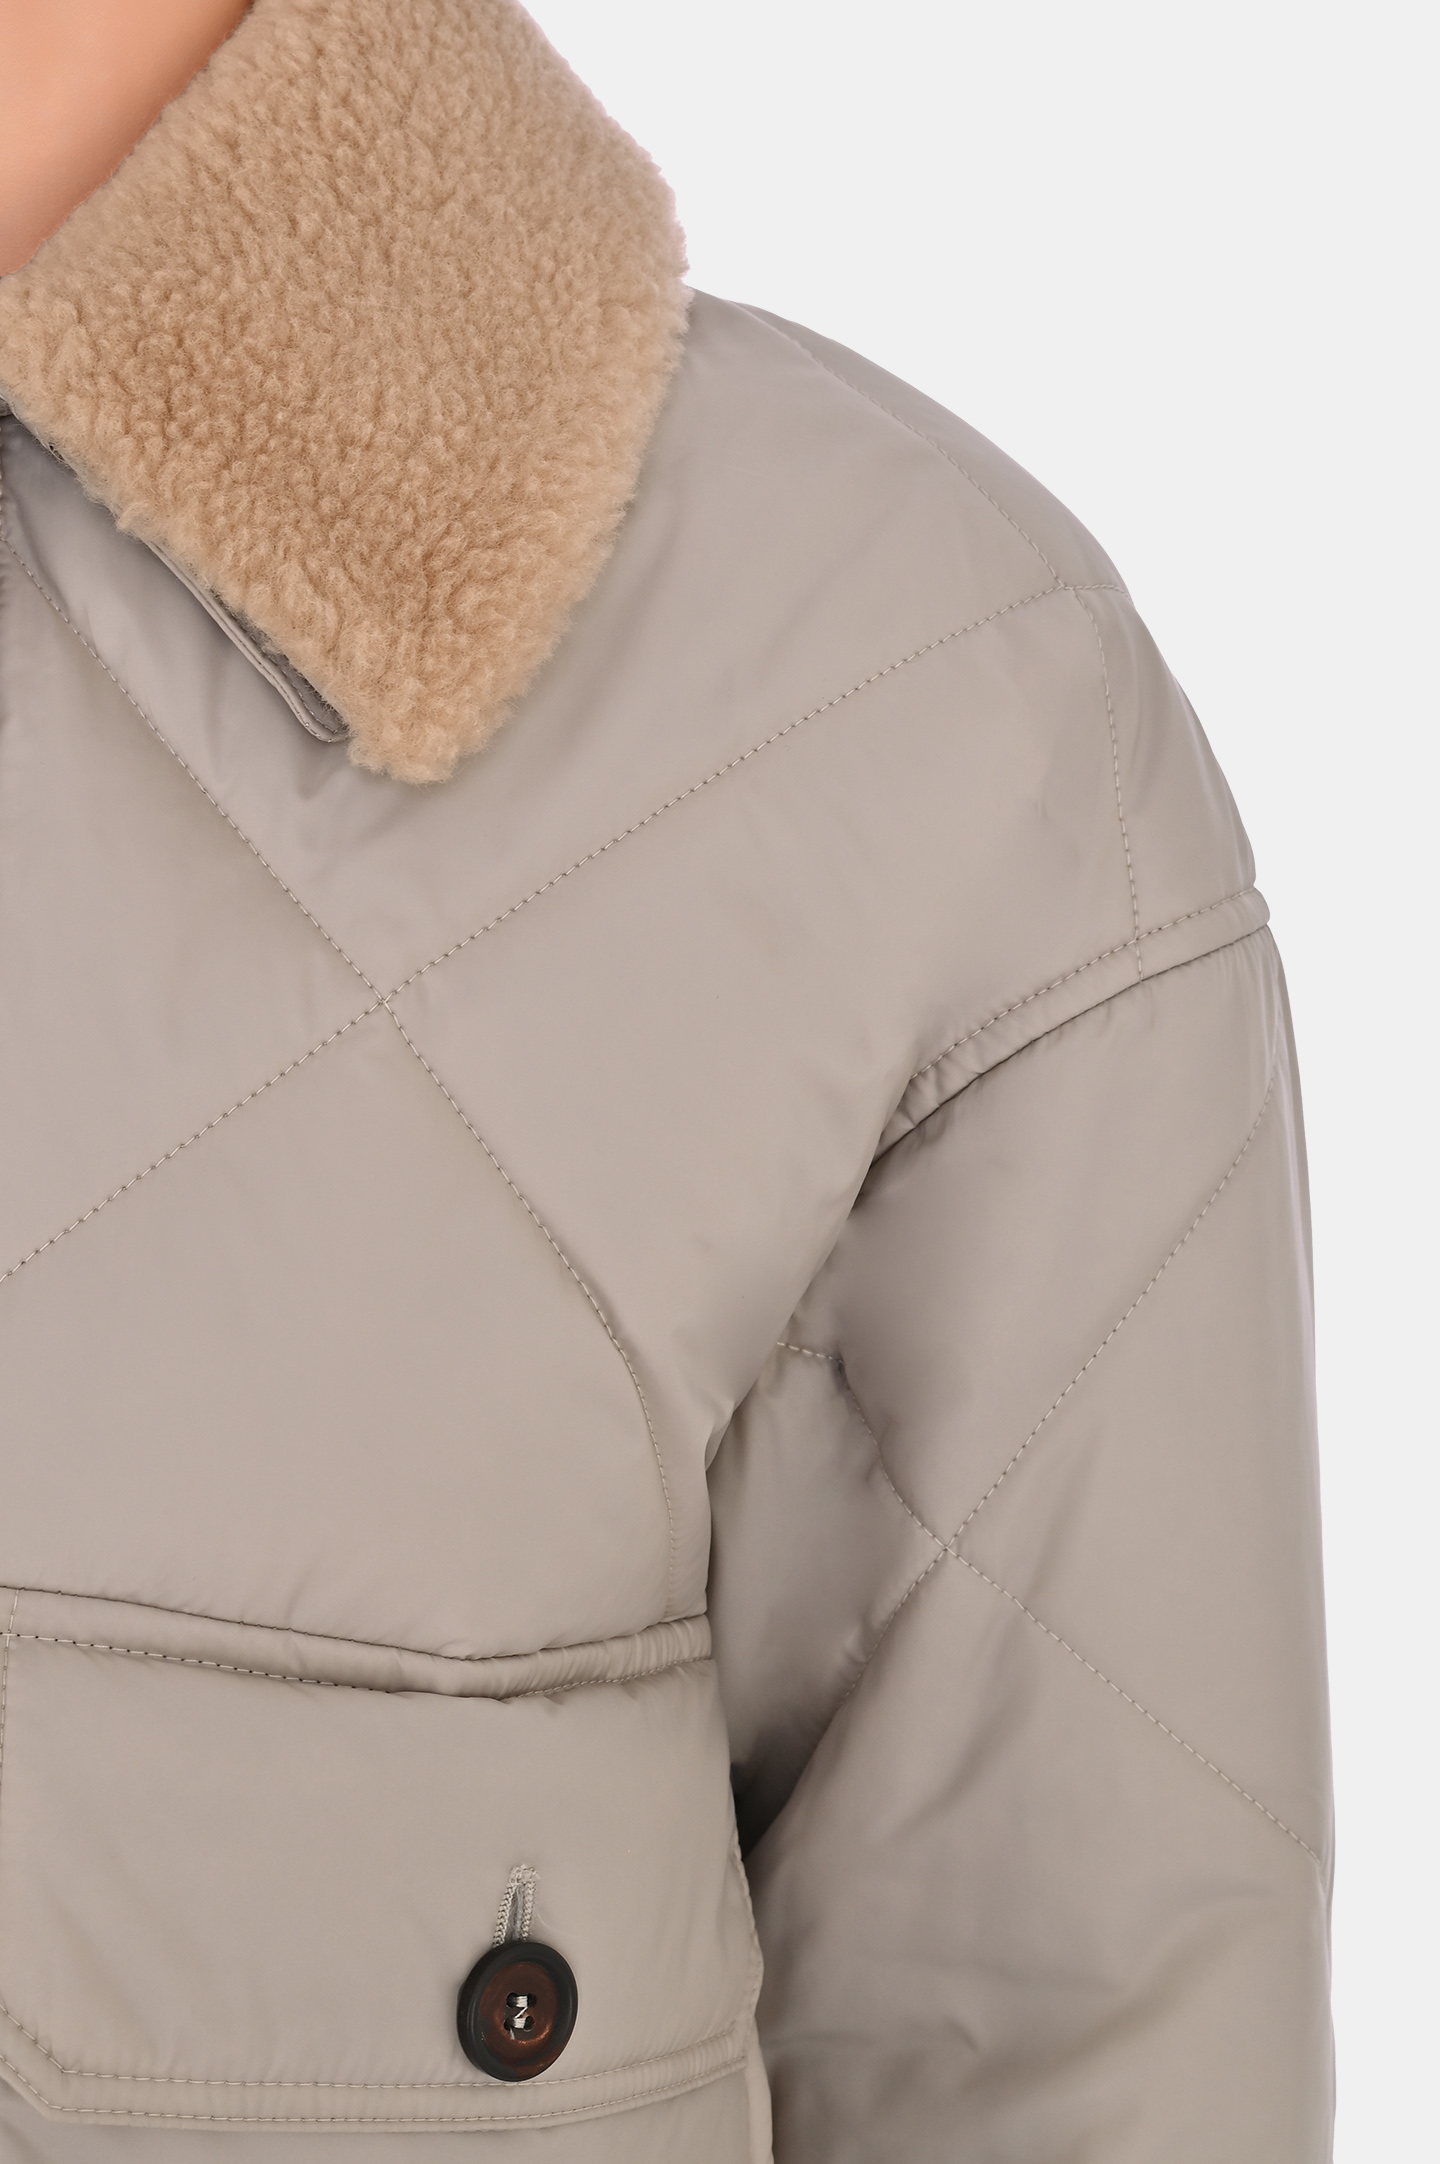 Куртка BRUNELLO  CUCINELLI MH5042600P, цвет: Светло-бежевый, Женский